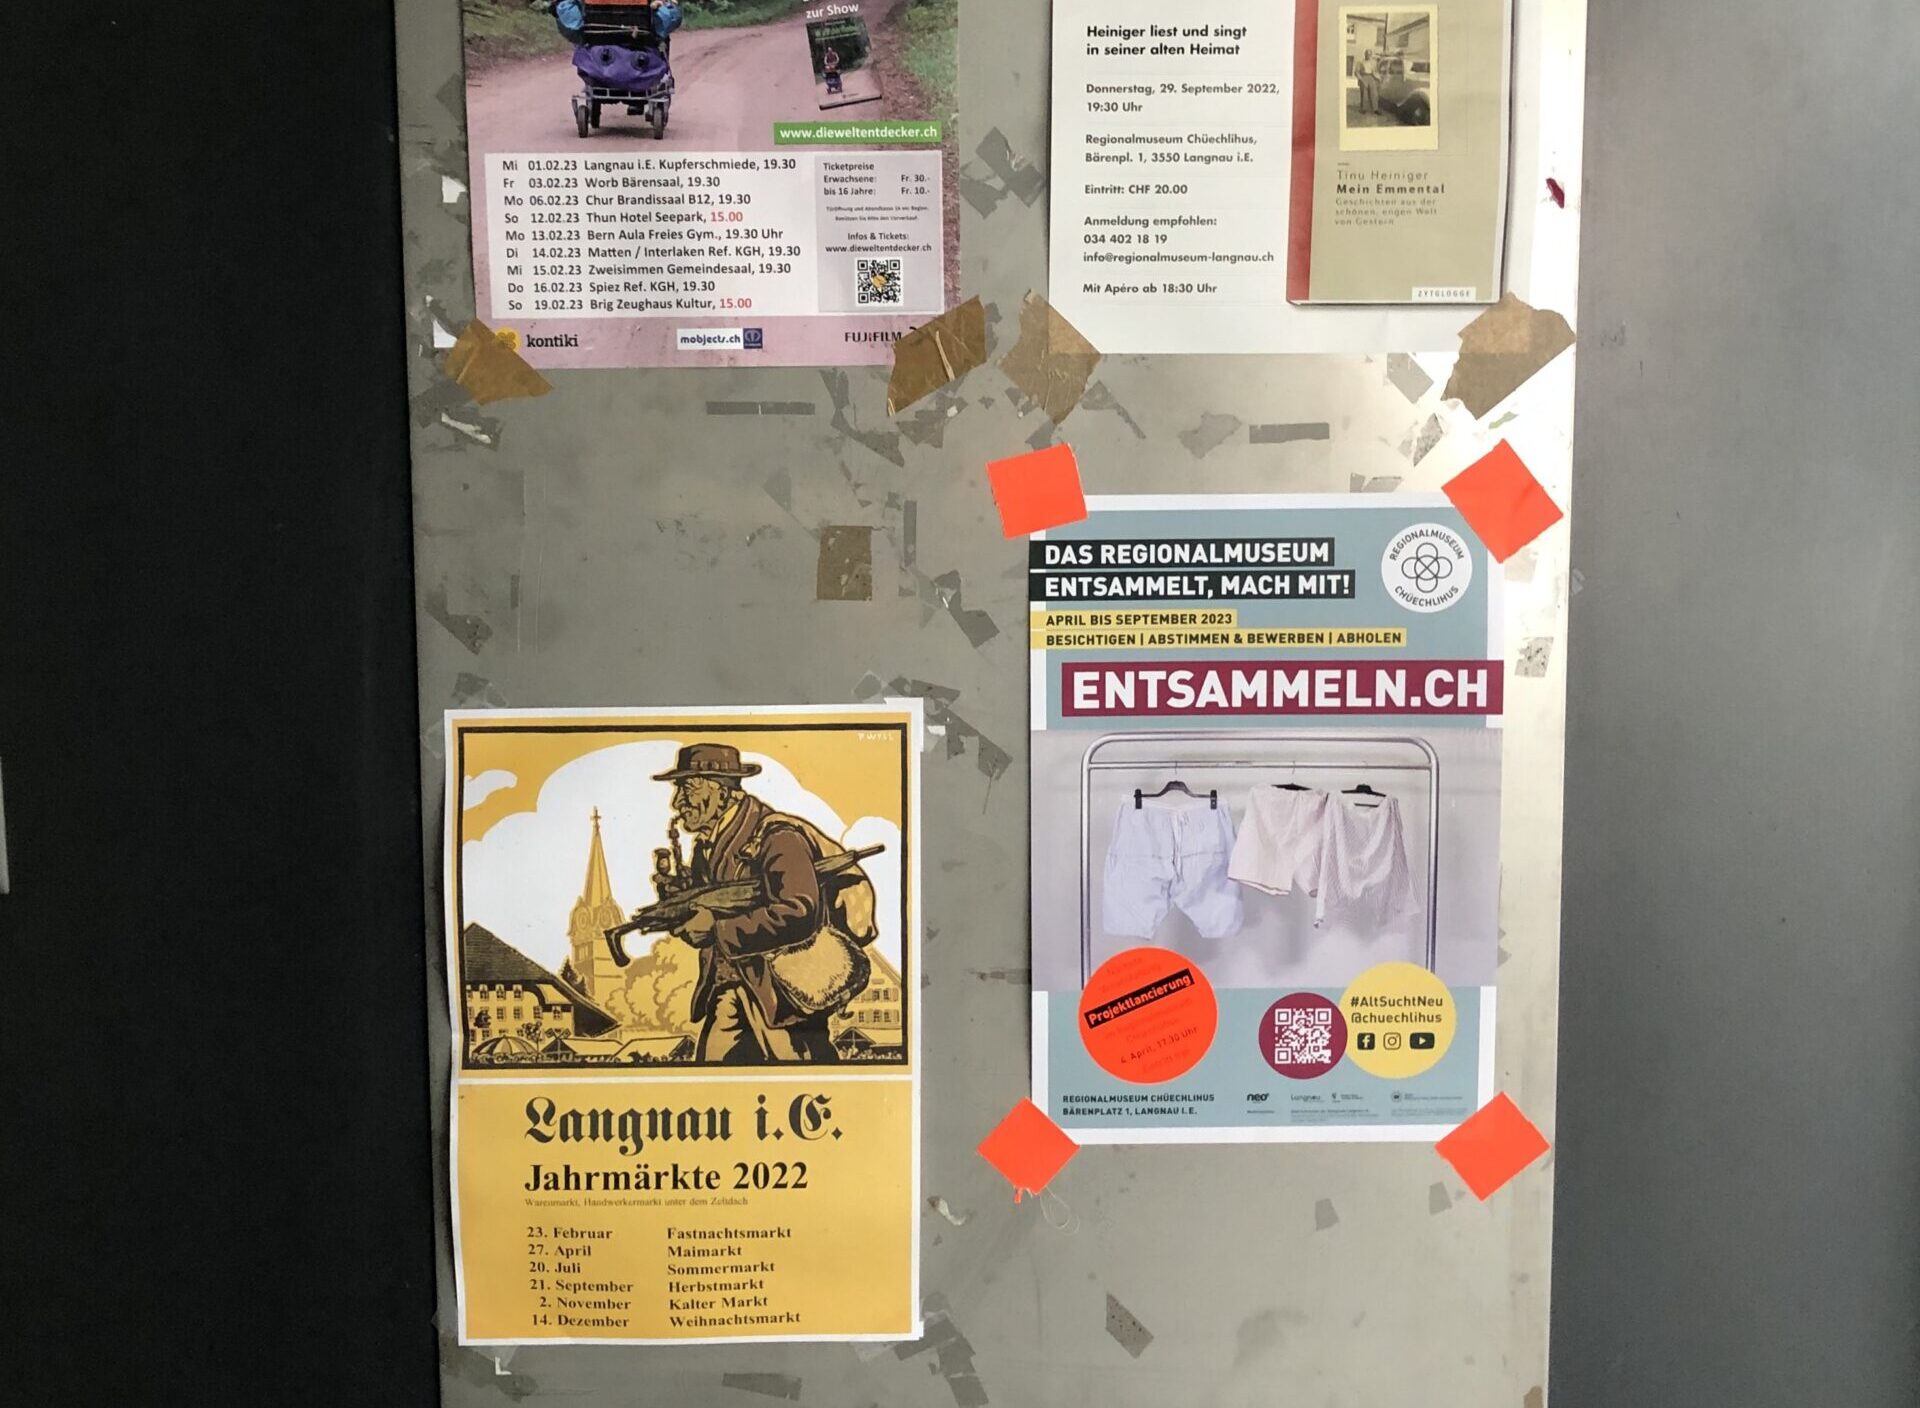 Plakatwand in Langnau mit #AltSuchtNeu